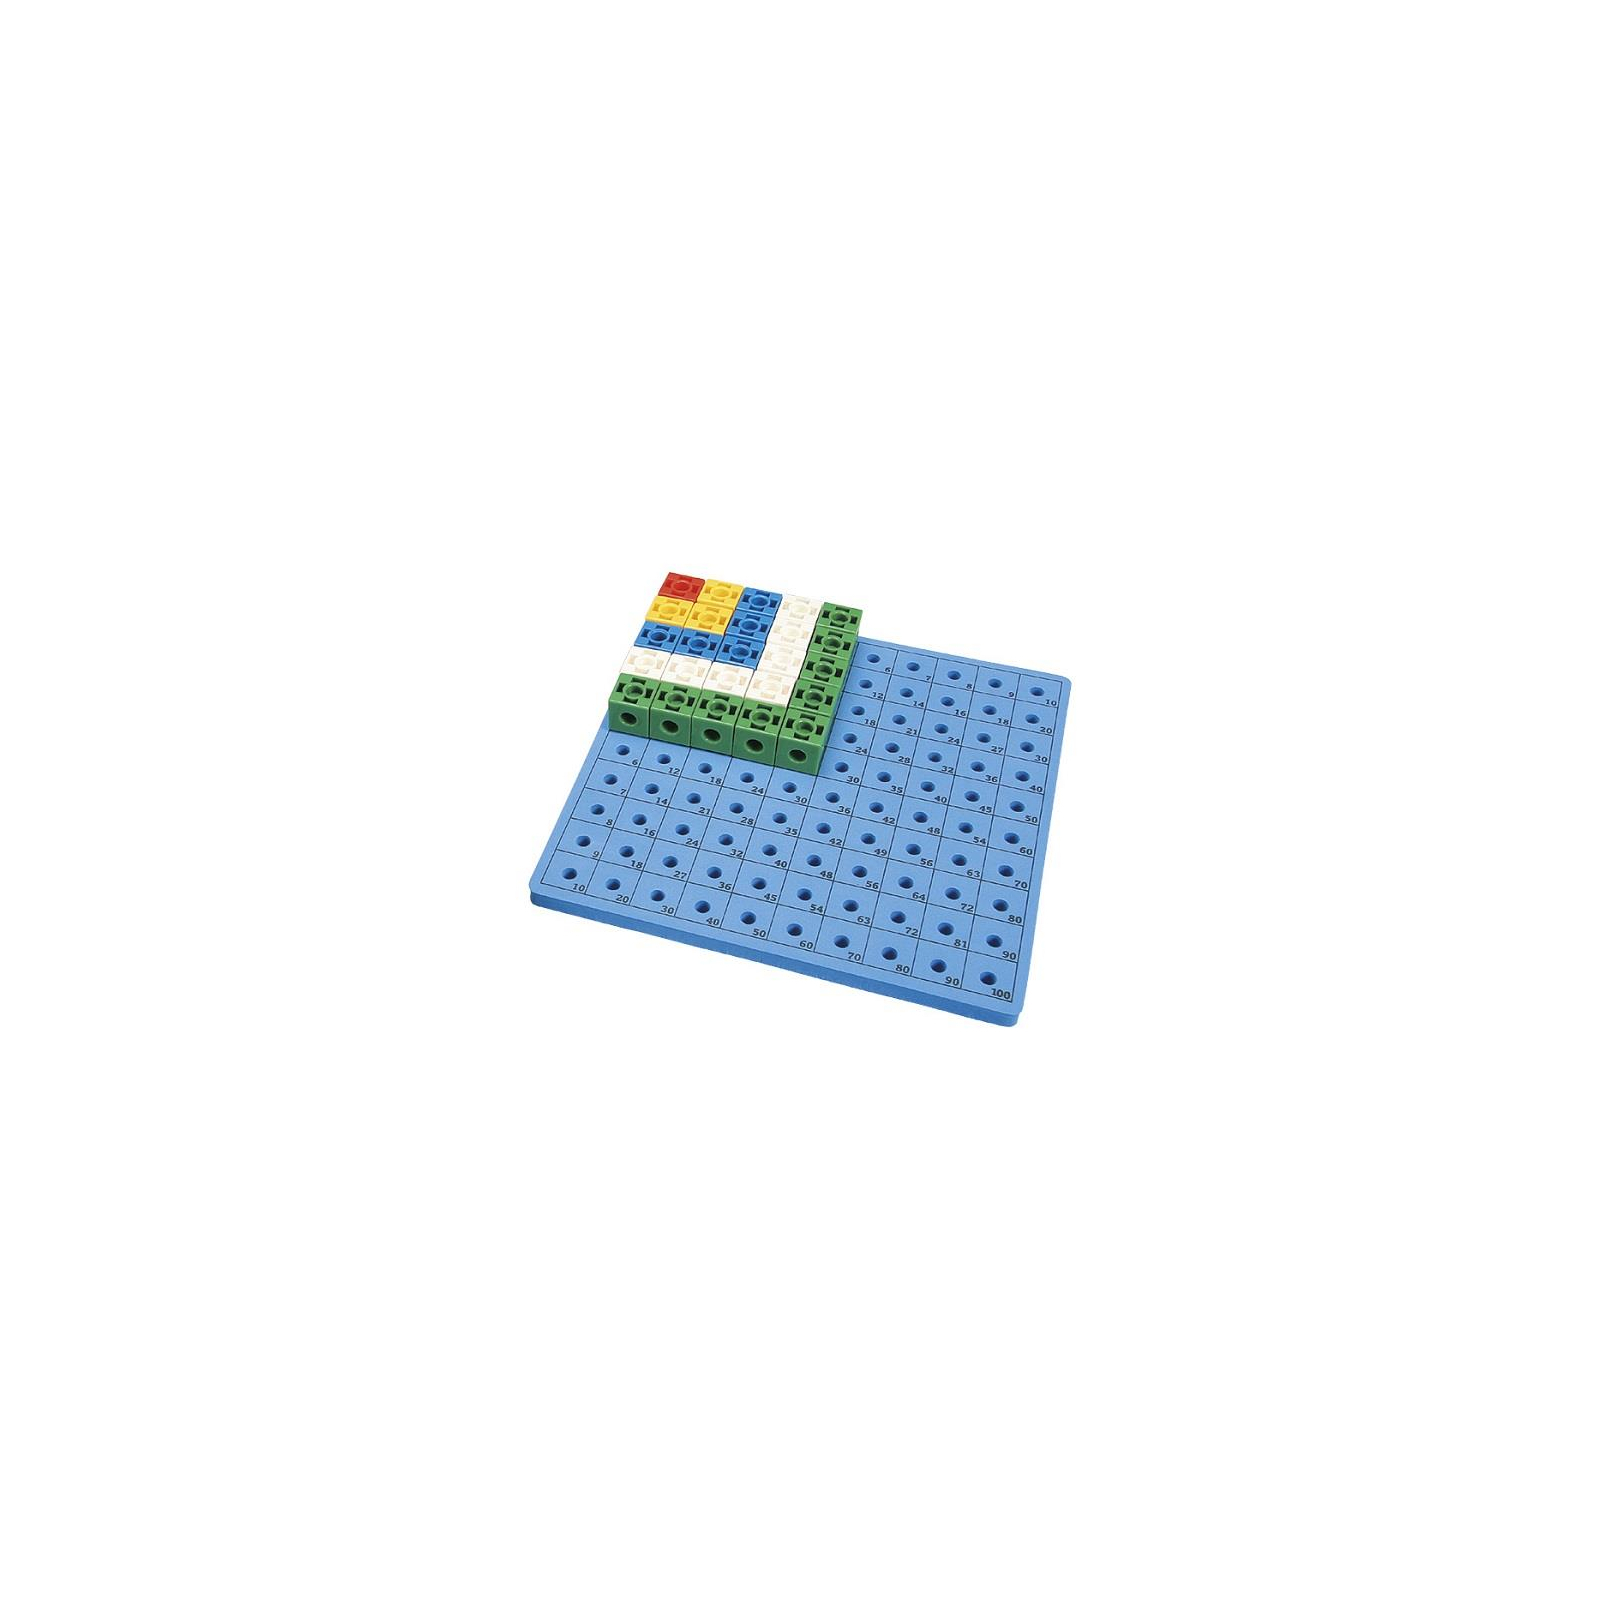 Розвиваюча іграшка Gigo Дошка до набору «Цікаві кубики» (1163) зображення 2